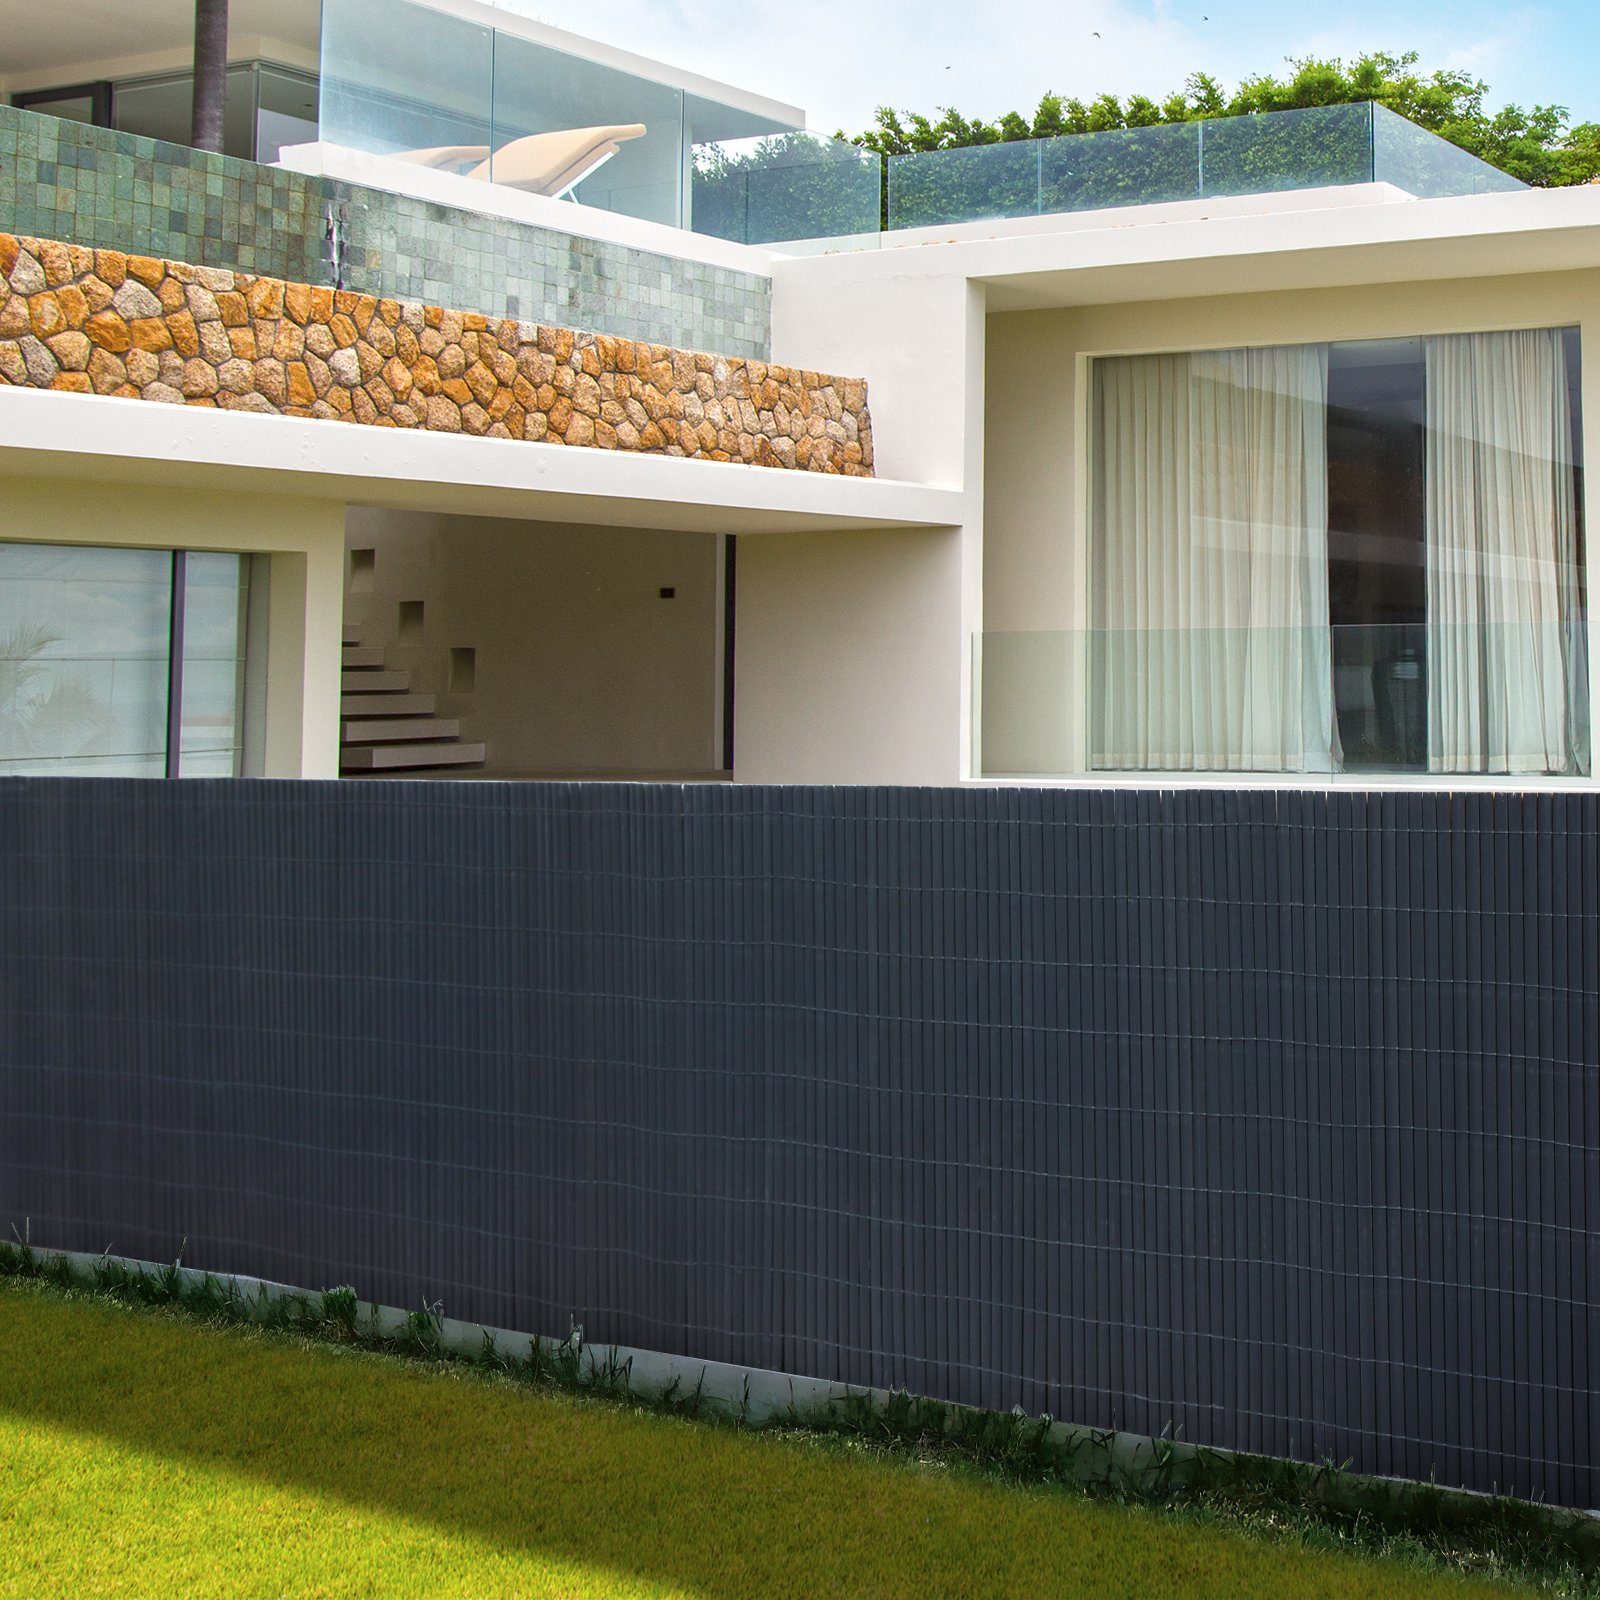 Wetterfest UV-beständig Grau Sichtschutz für Garten Terrasse Balkonumrandung mit verstärkten Lamellen Lospitch PVC Sichtschutzmatte Balkon Balkonverkleidung Bambuszaun 80 x 400 cm Kürzbar 